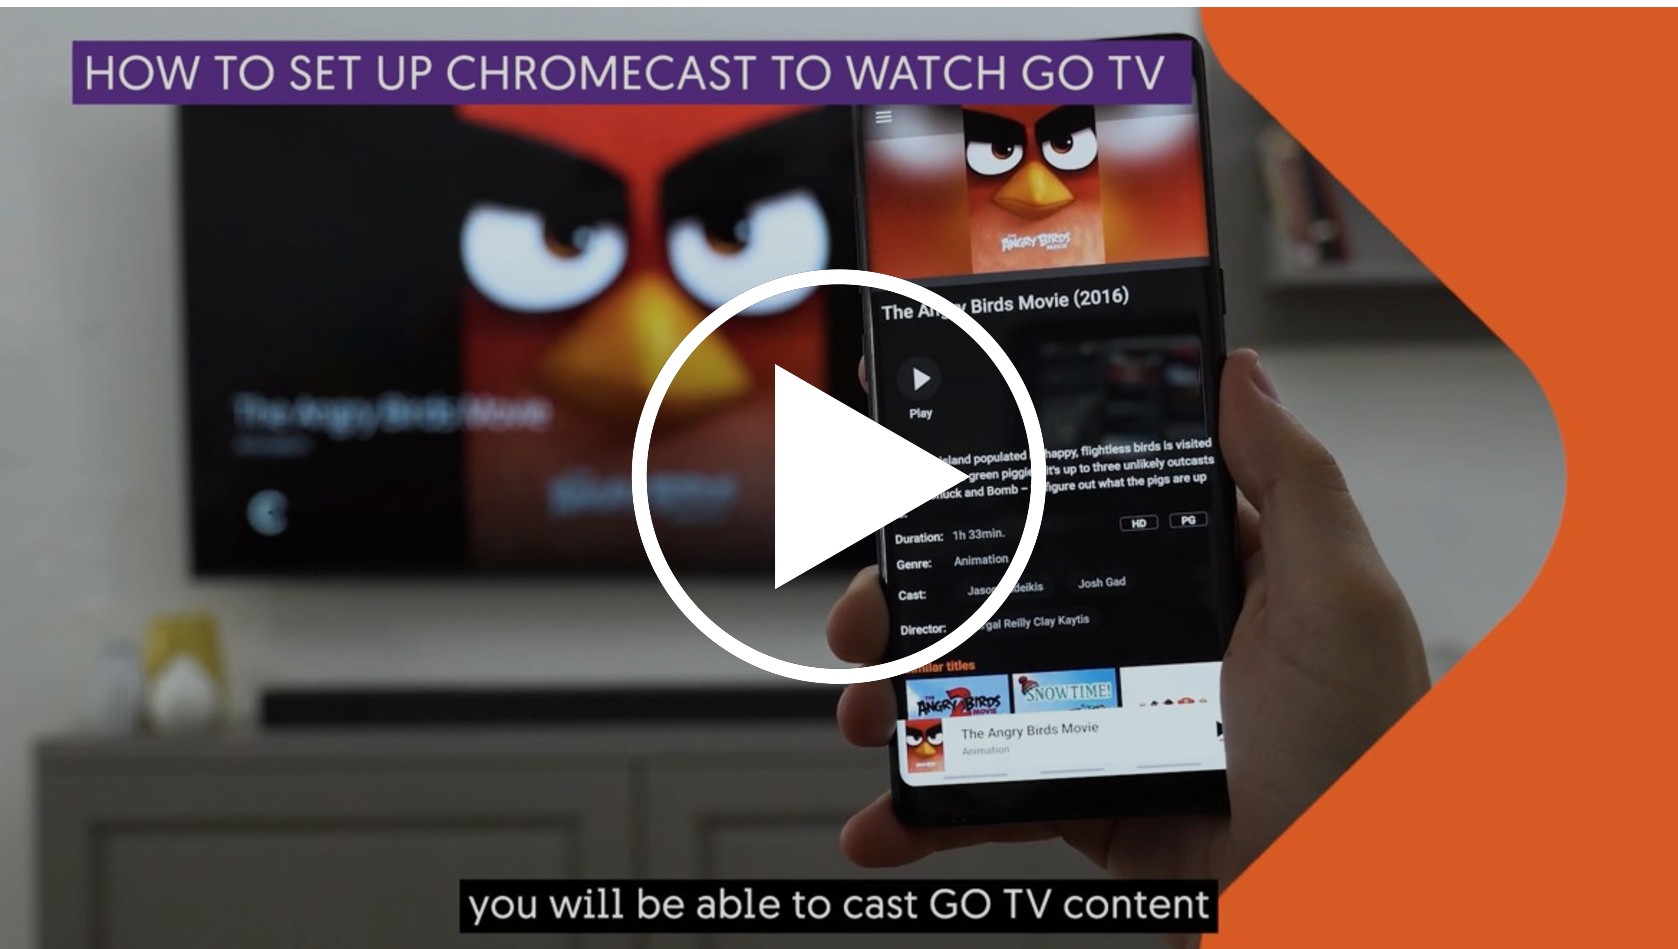 How to set up Chromecast to watch GO TV